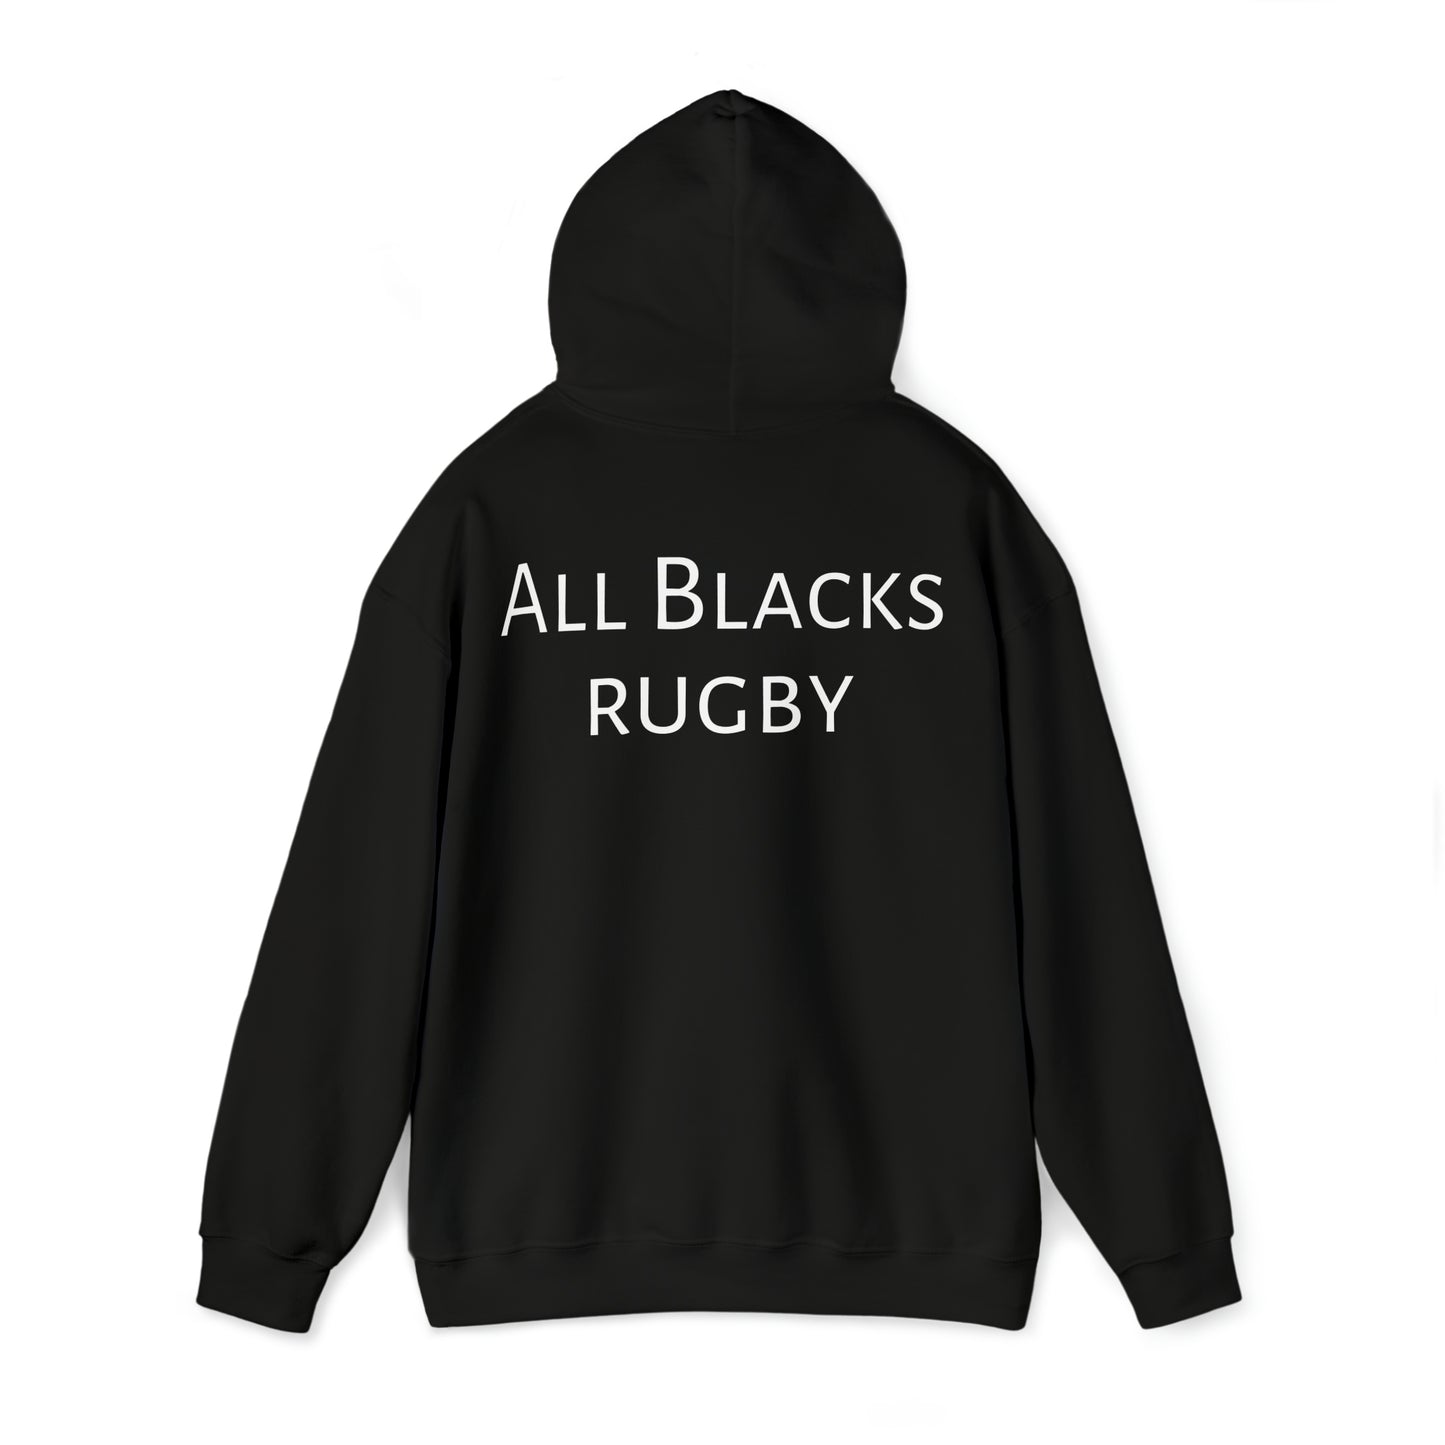 Māori Warrior - black hoodie